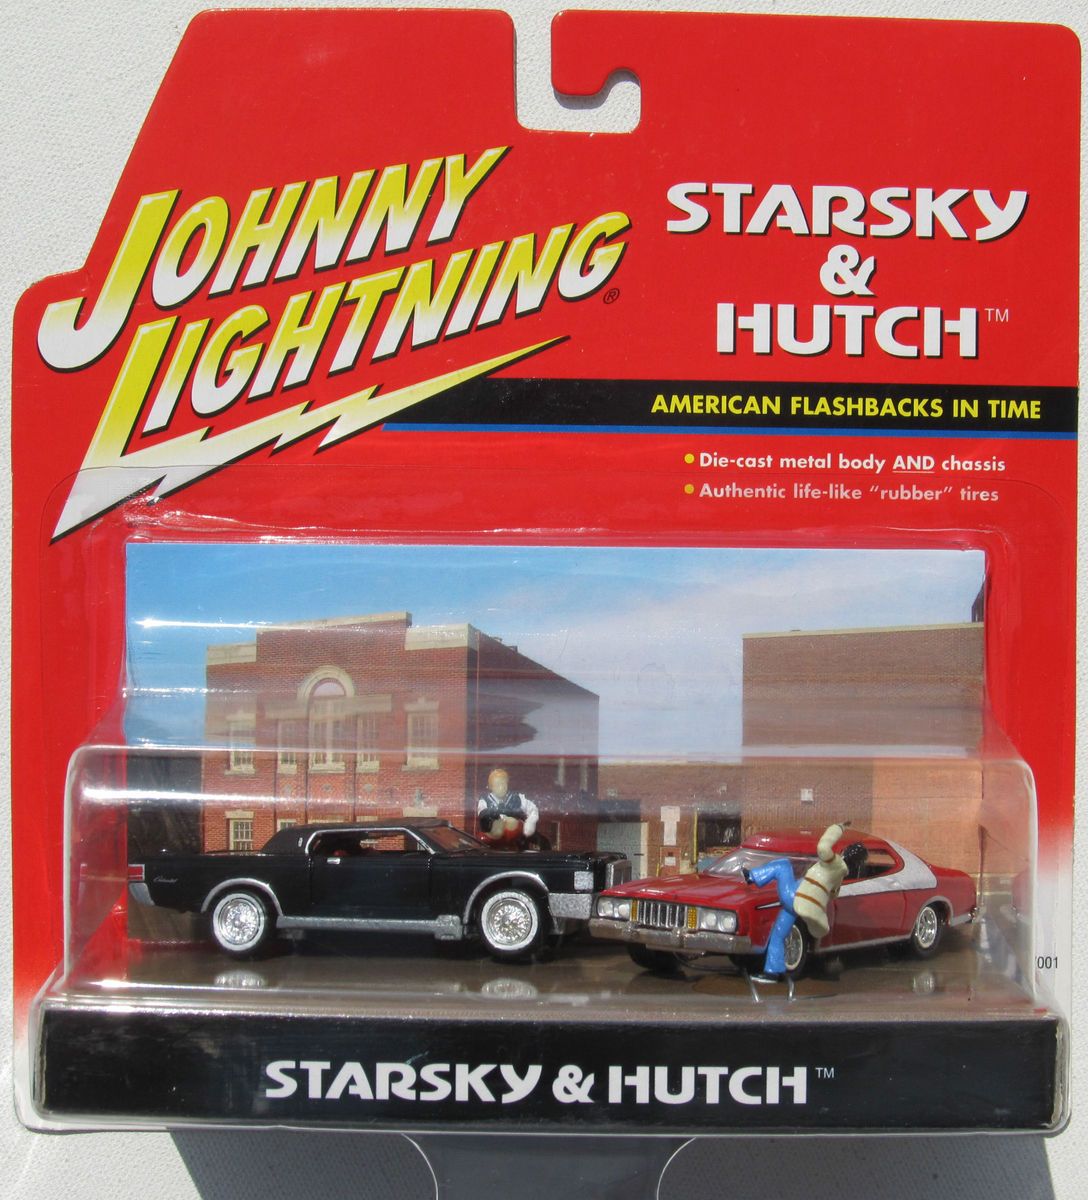 JL Starsky Hutch Scene 74 Grand Torino 69 Lincoln Continental